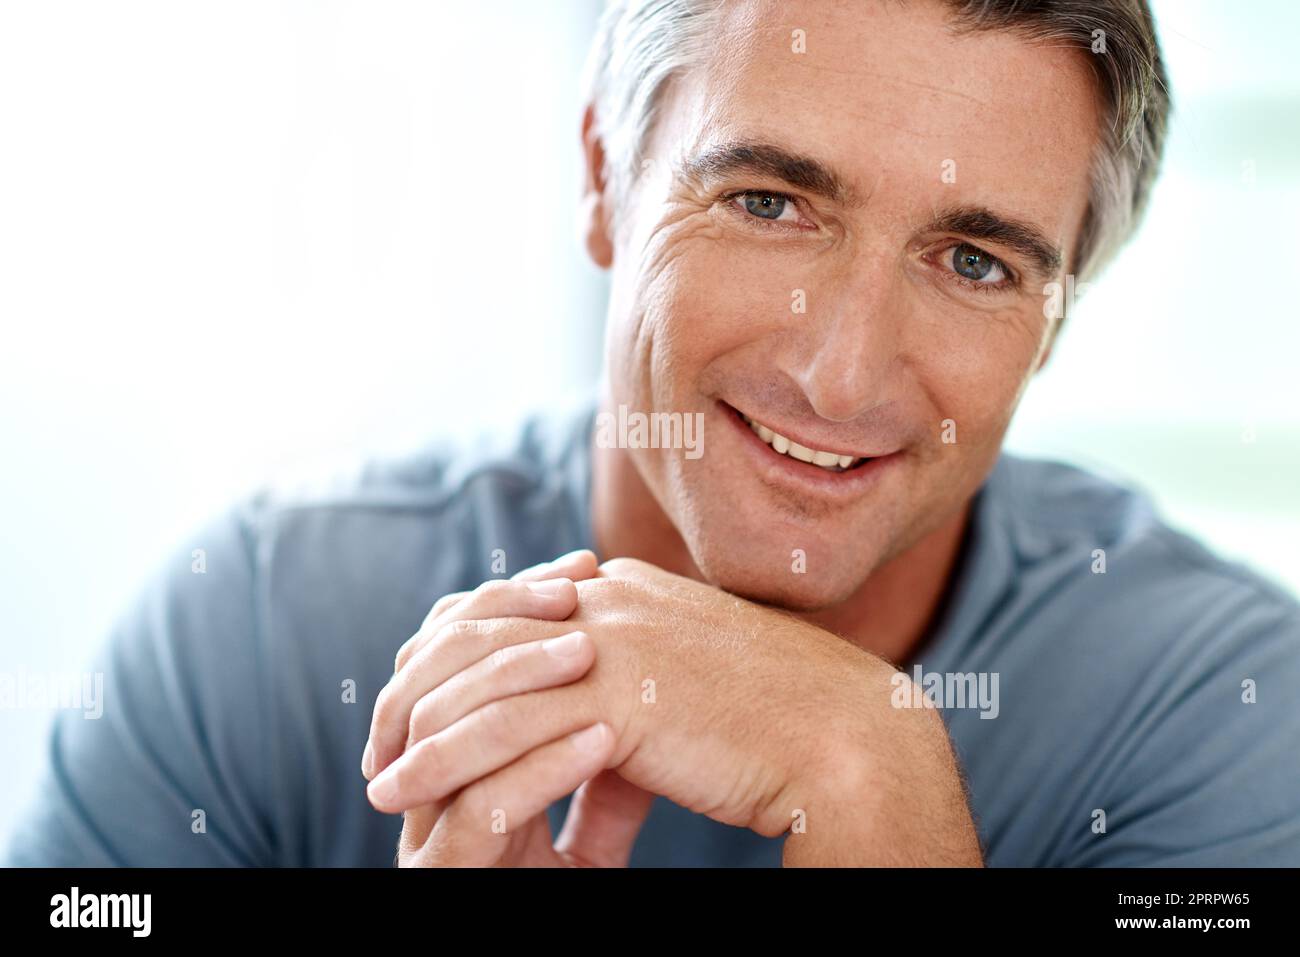 Imparare a rilassarsi. Ritratto di un bell'uomo maturo sorridente mentre guardava la fotocamera durante il giorno. Foto Stock